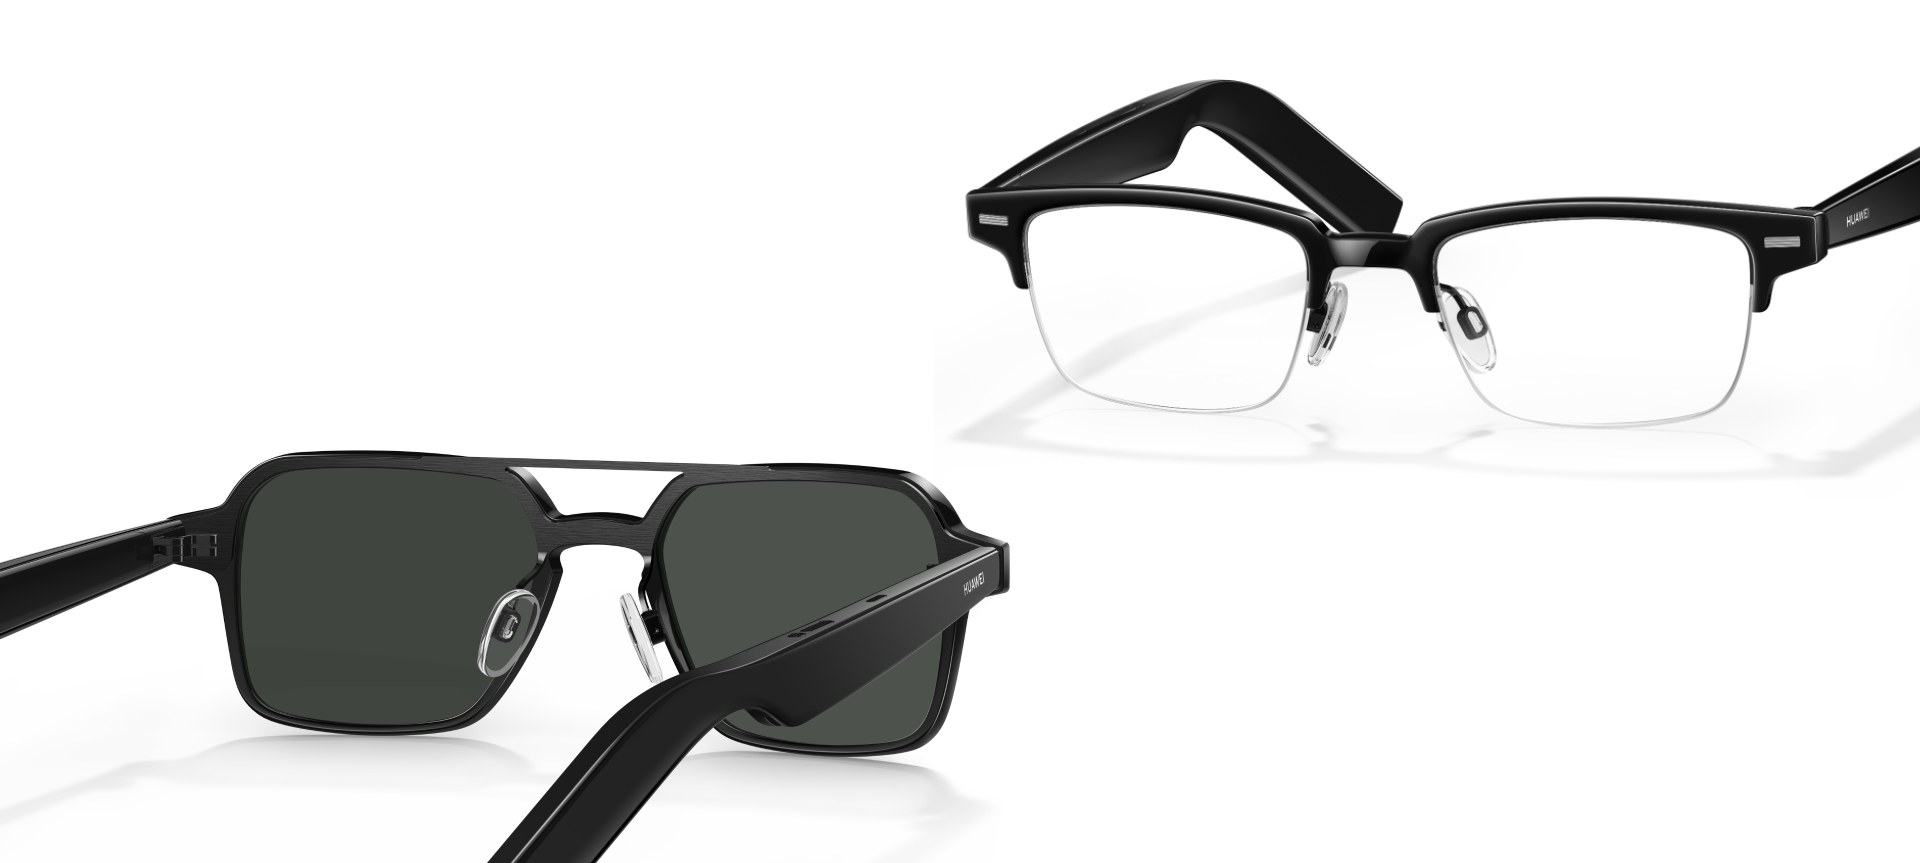 Huawei Eyewear 2 smartbriller med høyttalere og Zeiss-linser har fått sin globale debut.